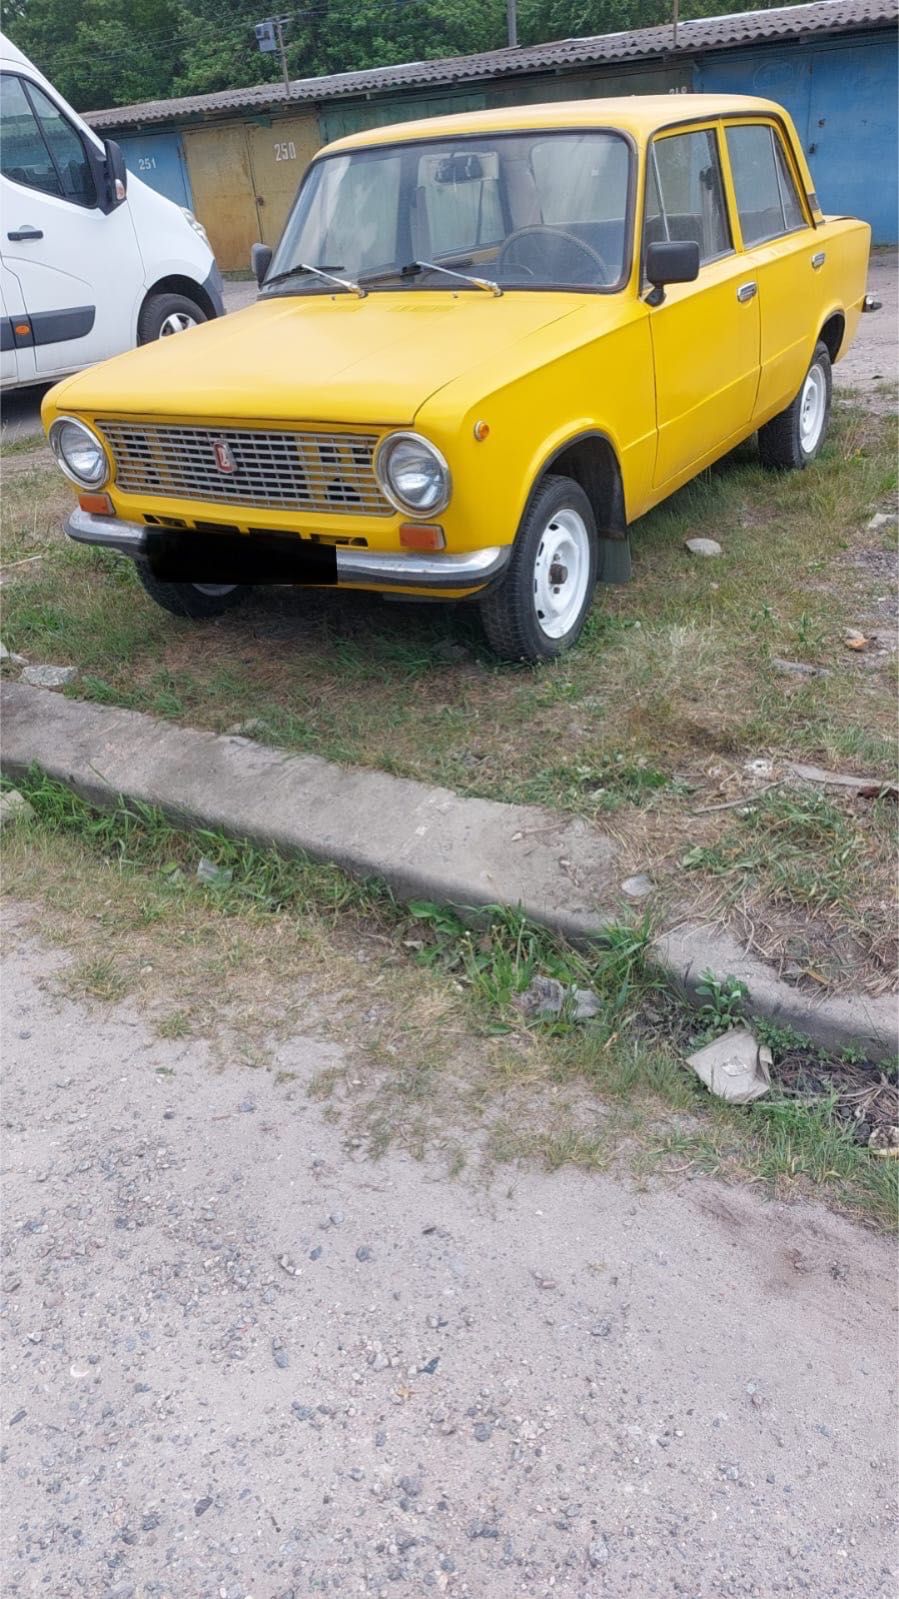 Продажа ВАЗ 21011, объём 1300 см, 1975 г. Пробег 125800 км.